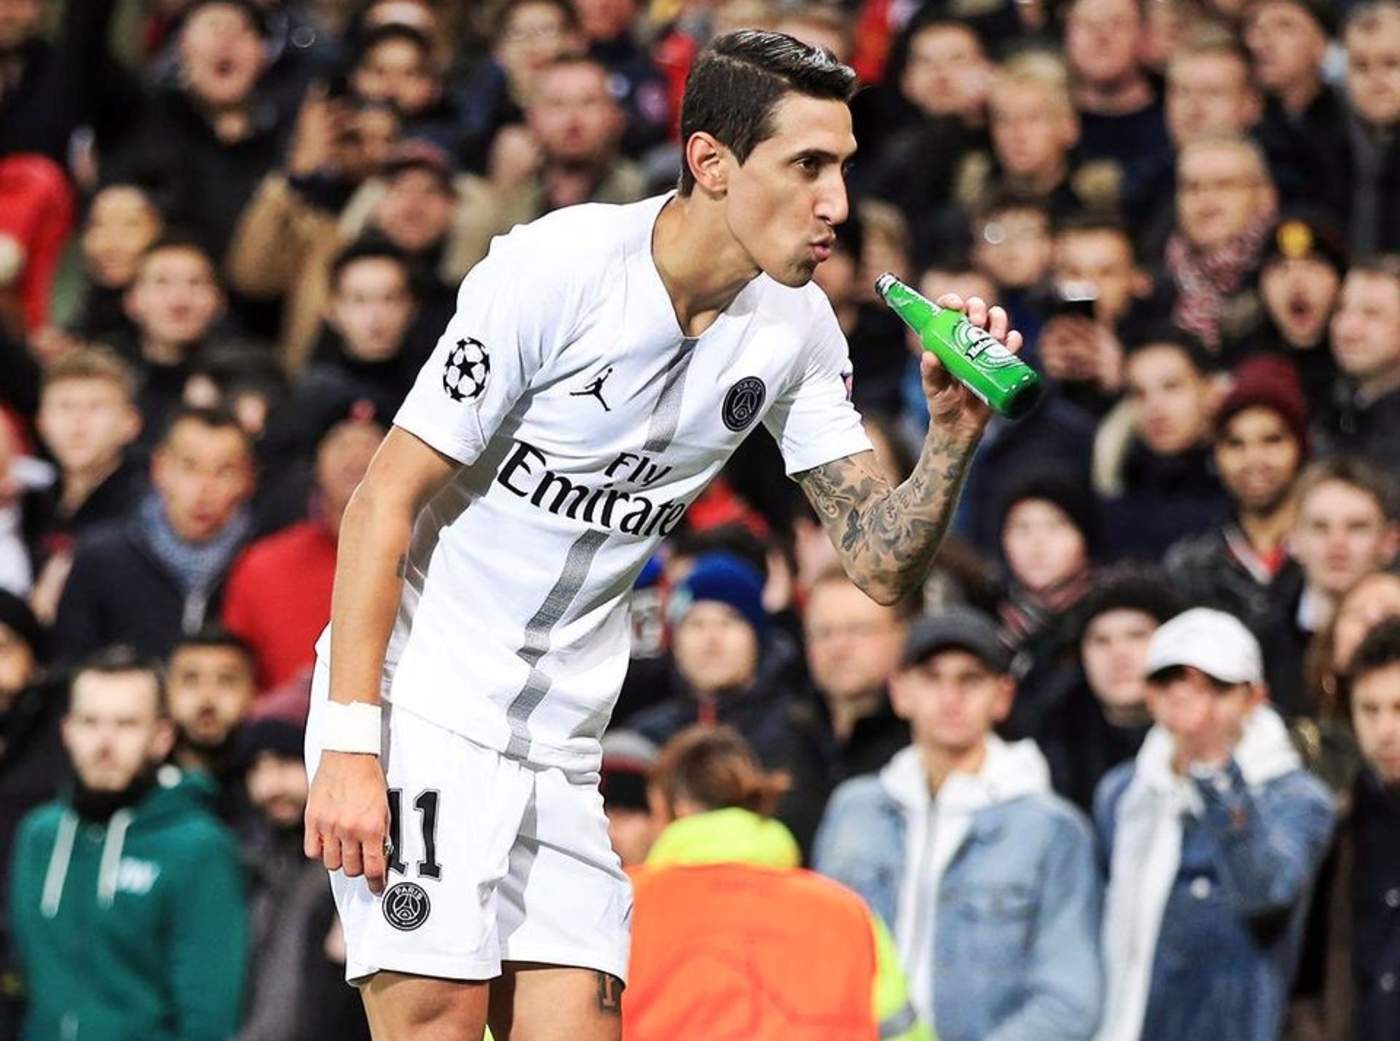 Di María, un ex jugador del United que fue abucheado por los hinchas locales en el partido disputado el martes, fingió beber de la botella tras tomarla del césped. (Especial)